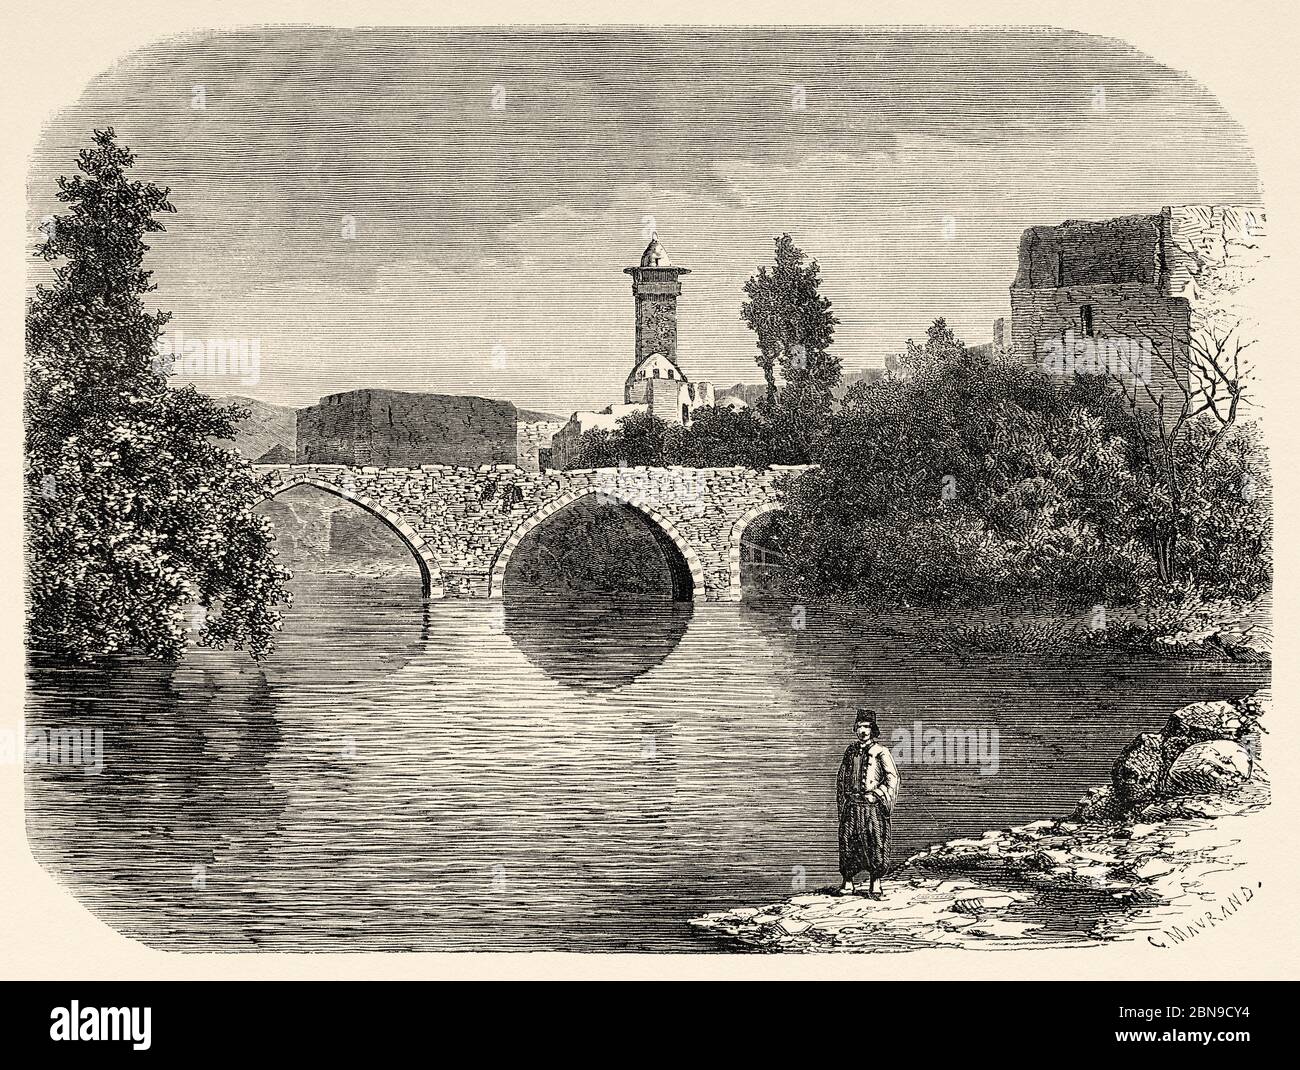 Pont sur la rivière Orontes dans la vieille ville de Hama. Syrie, République arabe syrienne. Moyen-Orient, illustration gravée du Vieux XIXe siècle, le Tour du monde 1863 Banque D'Images